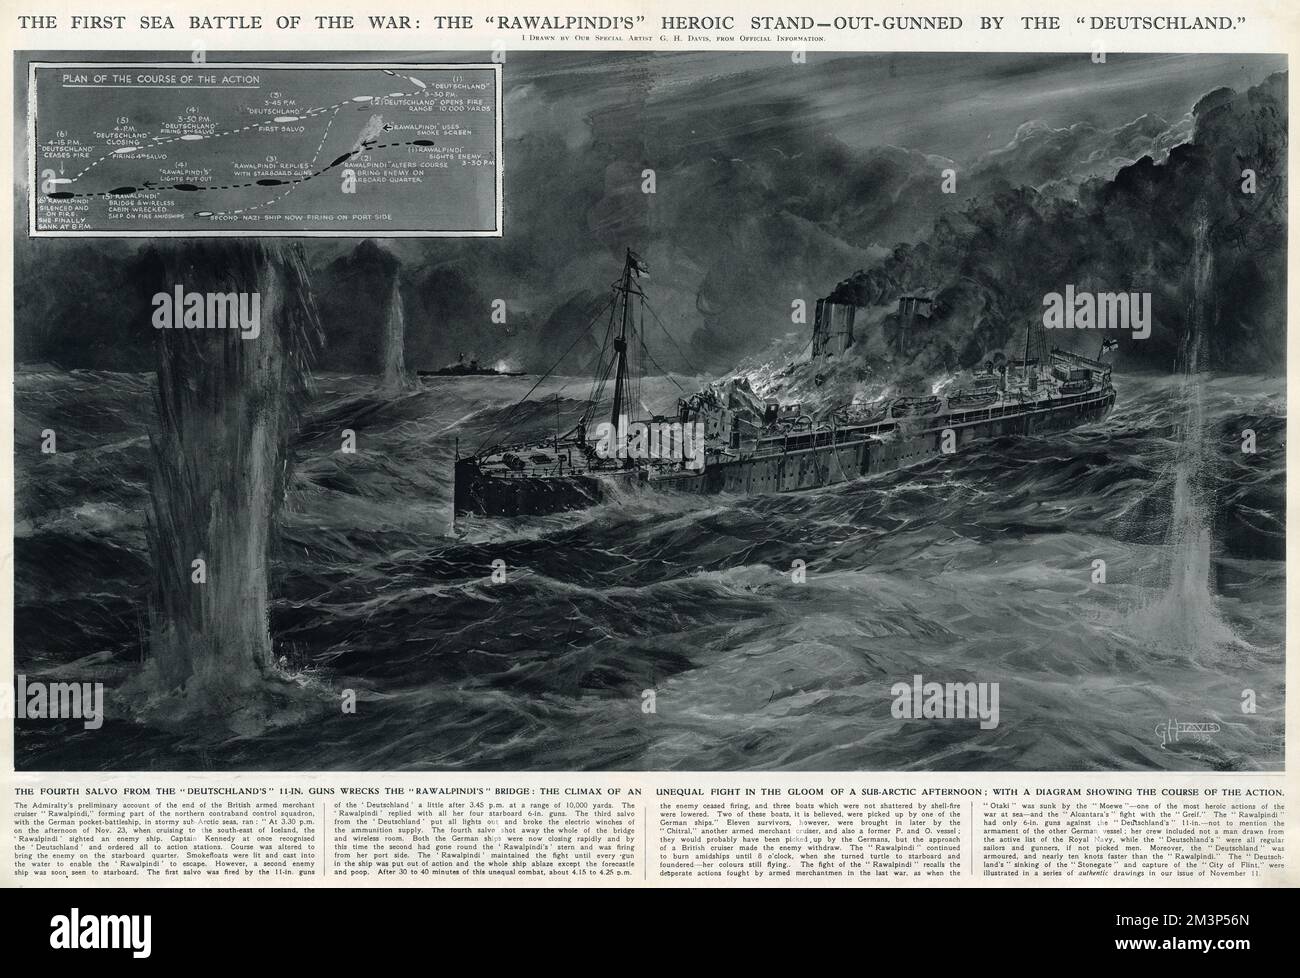 La première bataille maritime de la Seconde Guerre mondiale : la position héroïque du croiseur britannique Rawalpindi armé, surmontée par l'Allemagne. La quatrième salve de l'Allemagne détruit le pont de Rawalpindi : le point culminant d'une lutte inégale dans le contexte d'un après-midi sous-arctique, avec un diagramme montrant le déroulement de l'action. Date : 23 novembre 1939 Banque D'Images